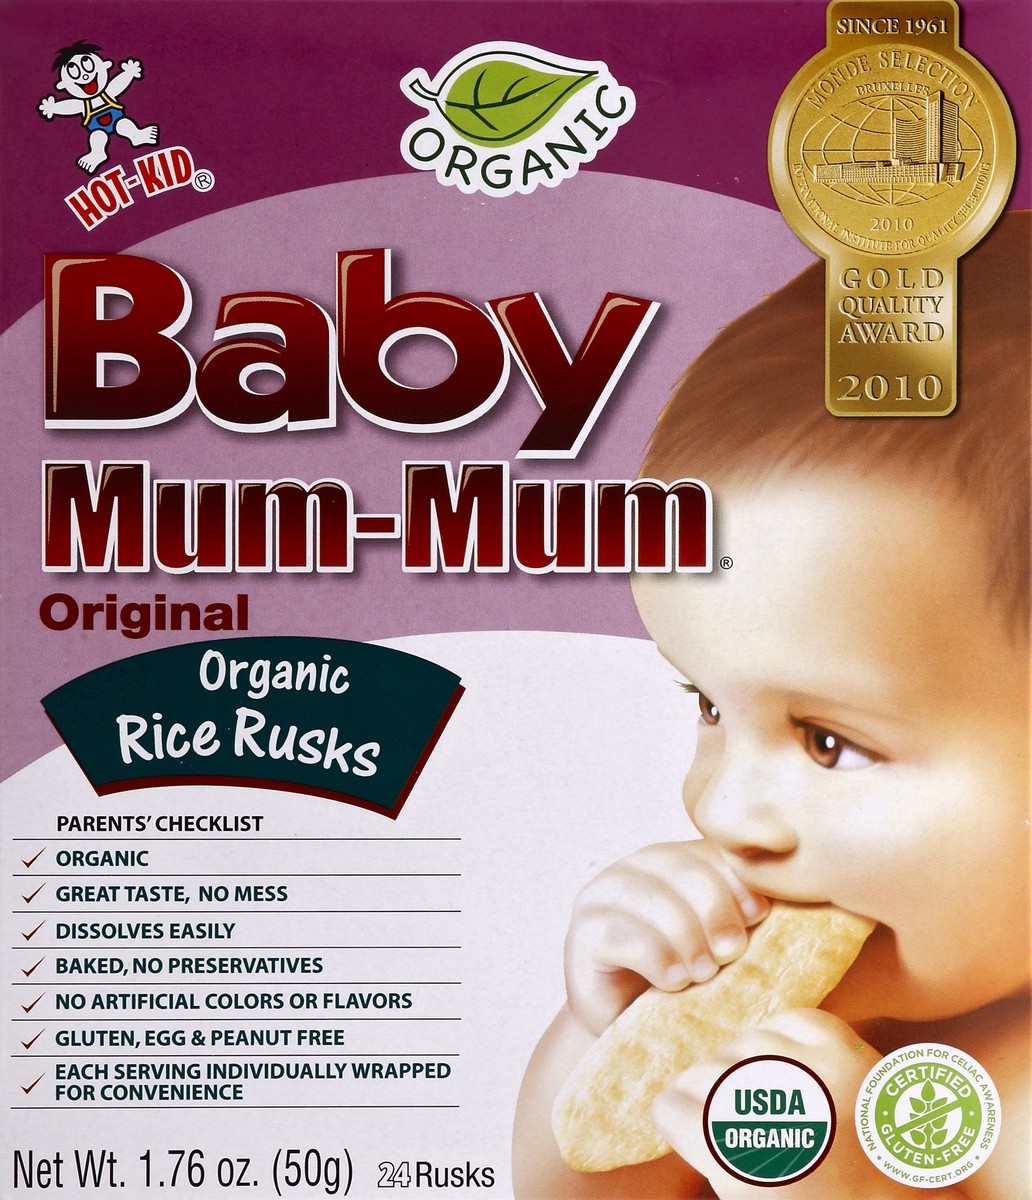 slide 2 of 5, Hot-Kid Baby Mum-Mum Original Organic Rice Rusks, 24 ct; 1.76 oz